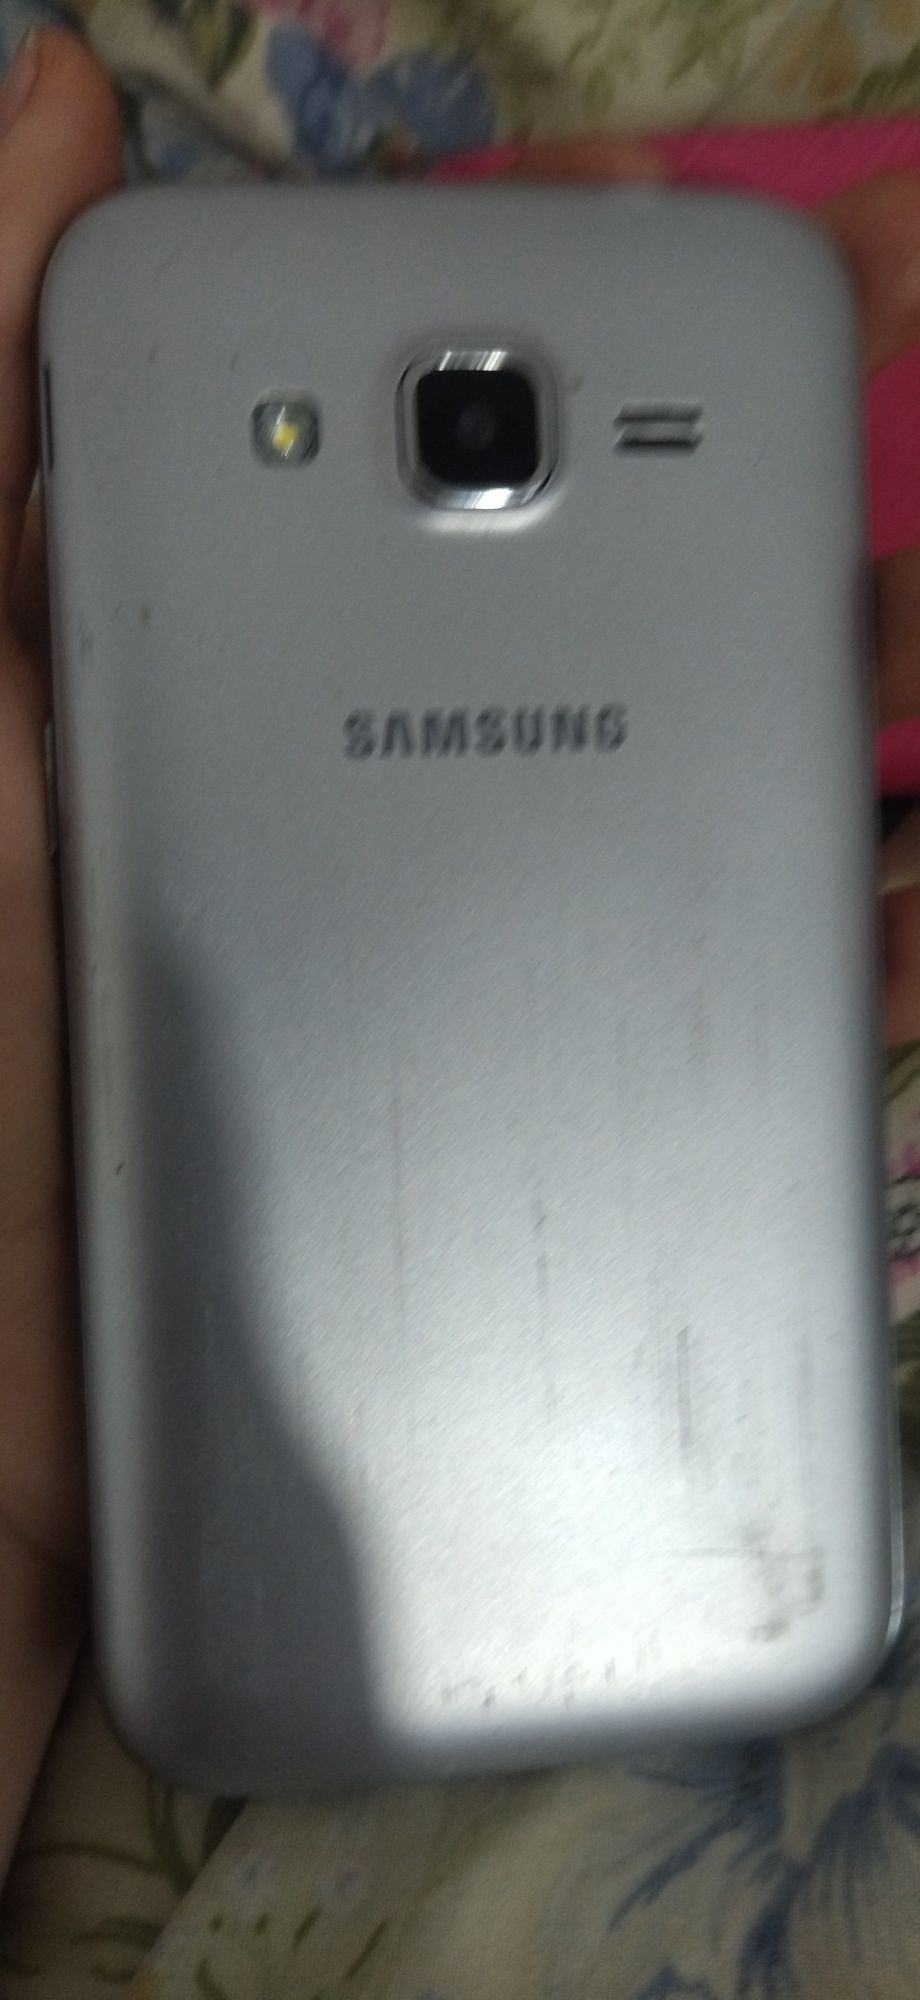 Samsung робочий який не знаю чохол іде в подарунок.